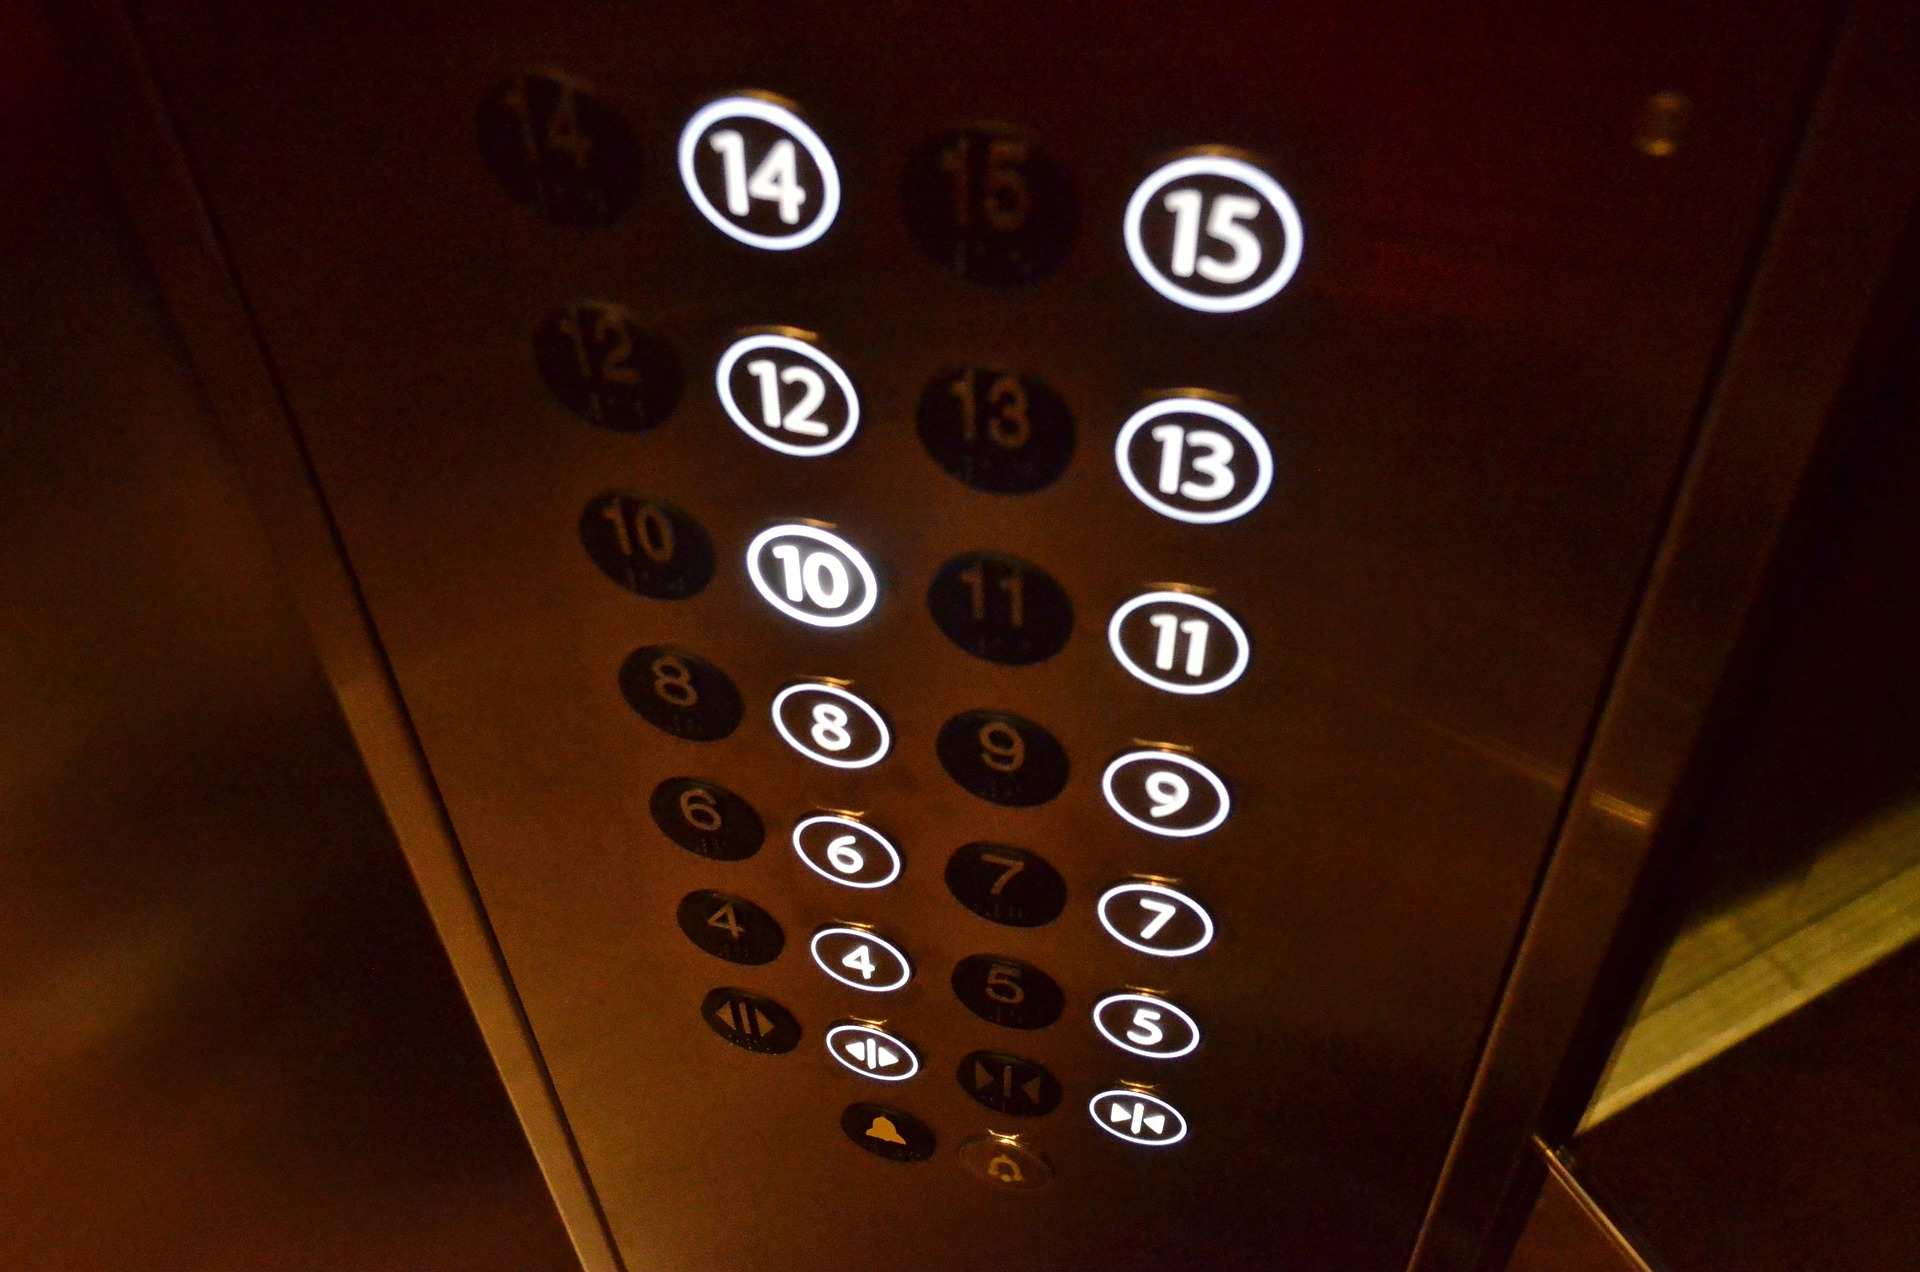 Замена первых лифтов началась в многоквартирных домах Воронежа - фото 1